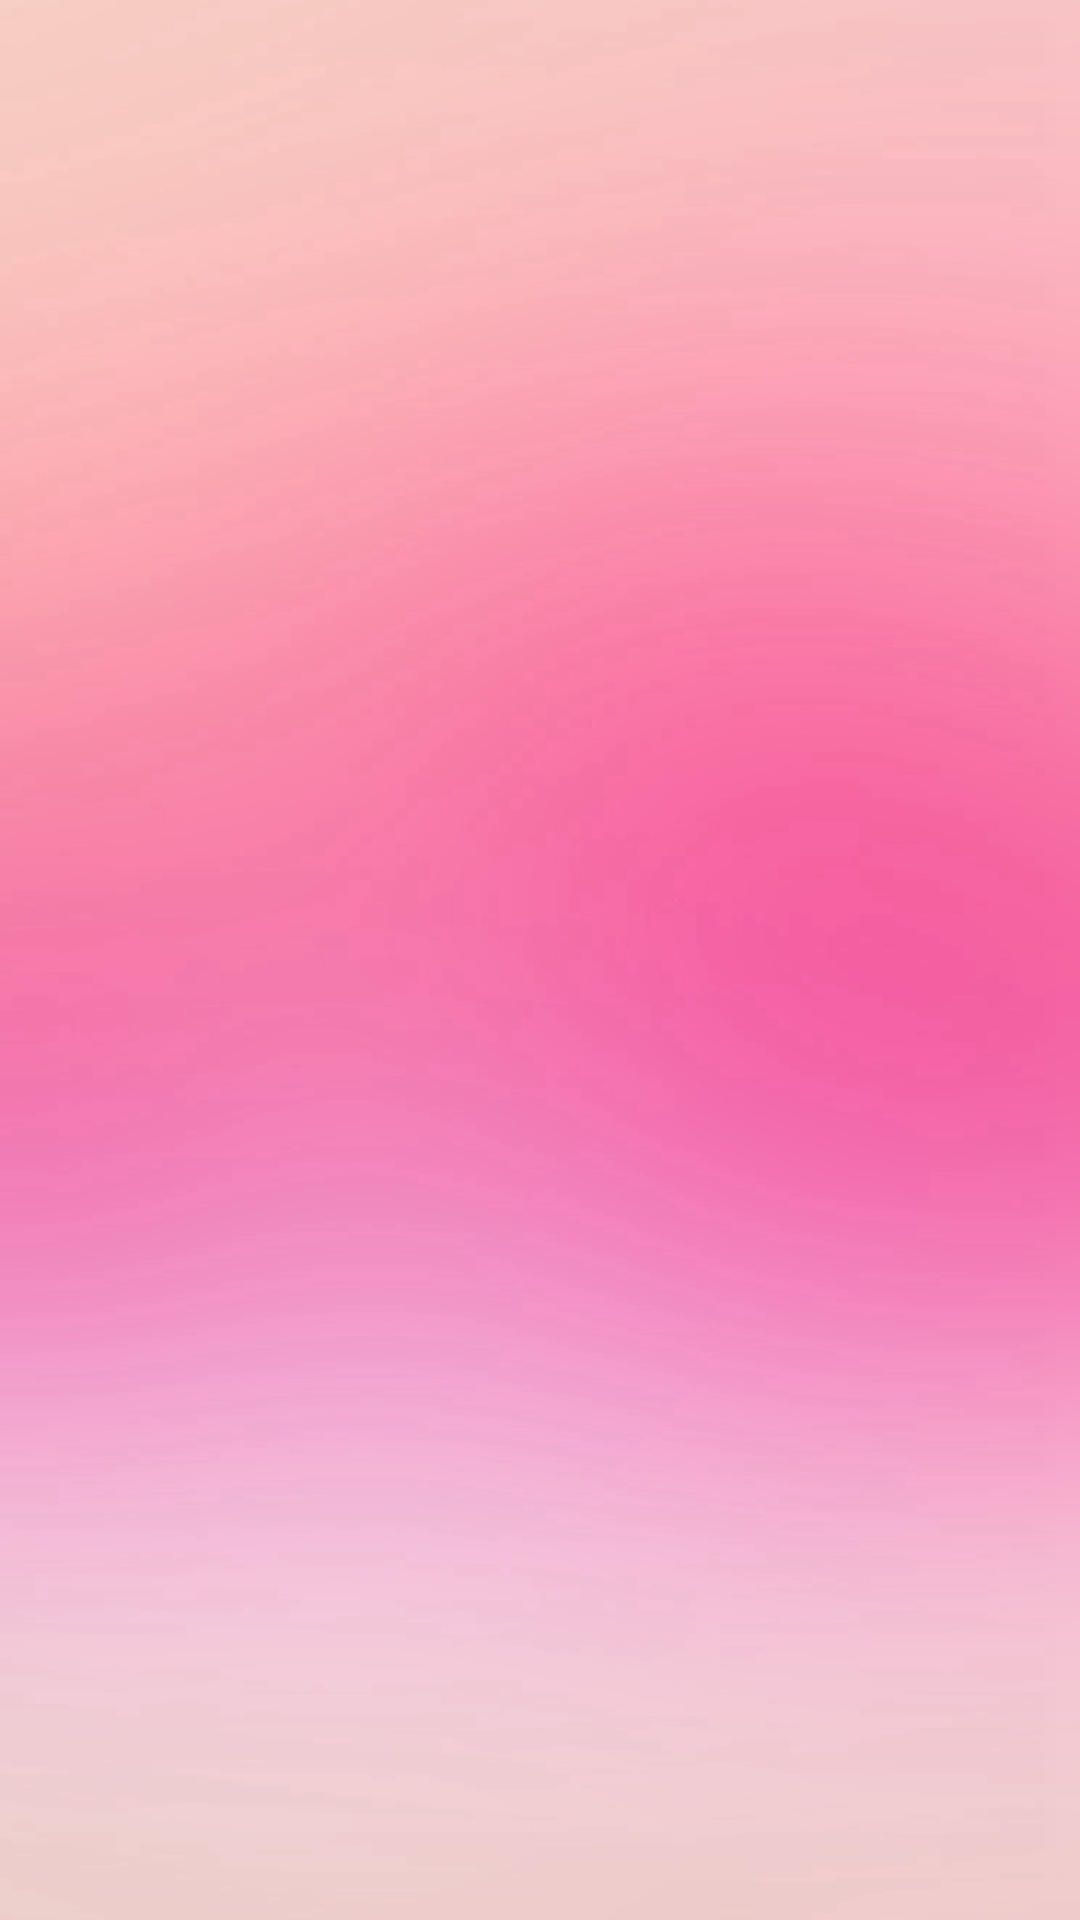 ディズニー画像ランド 元のiphone 壁紙 ピンク シンプル